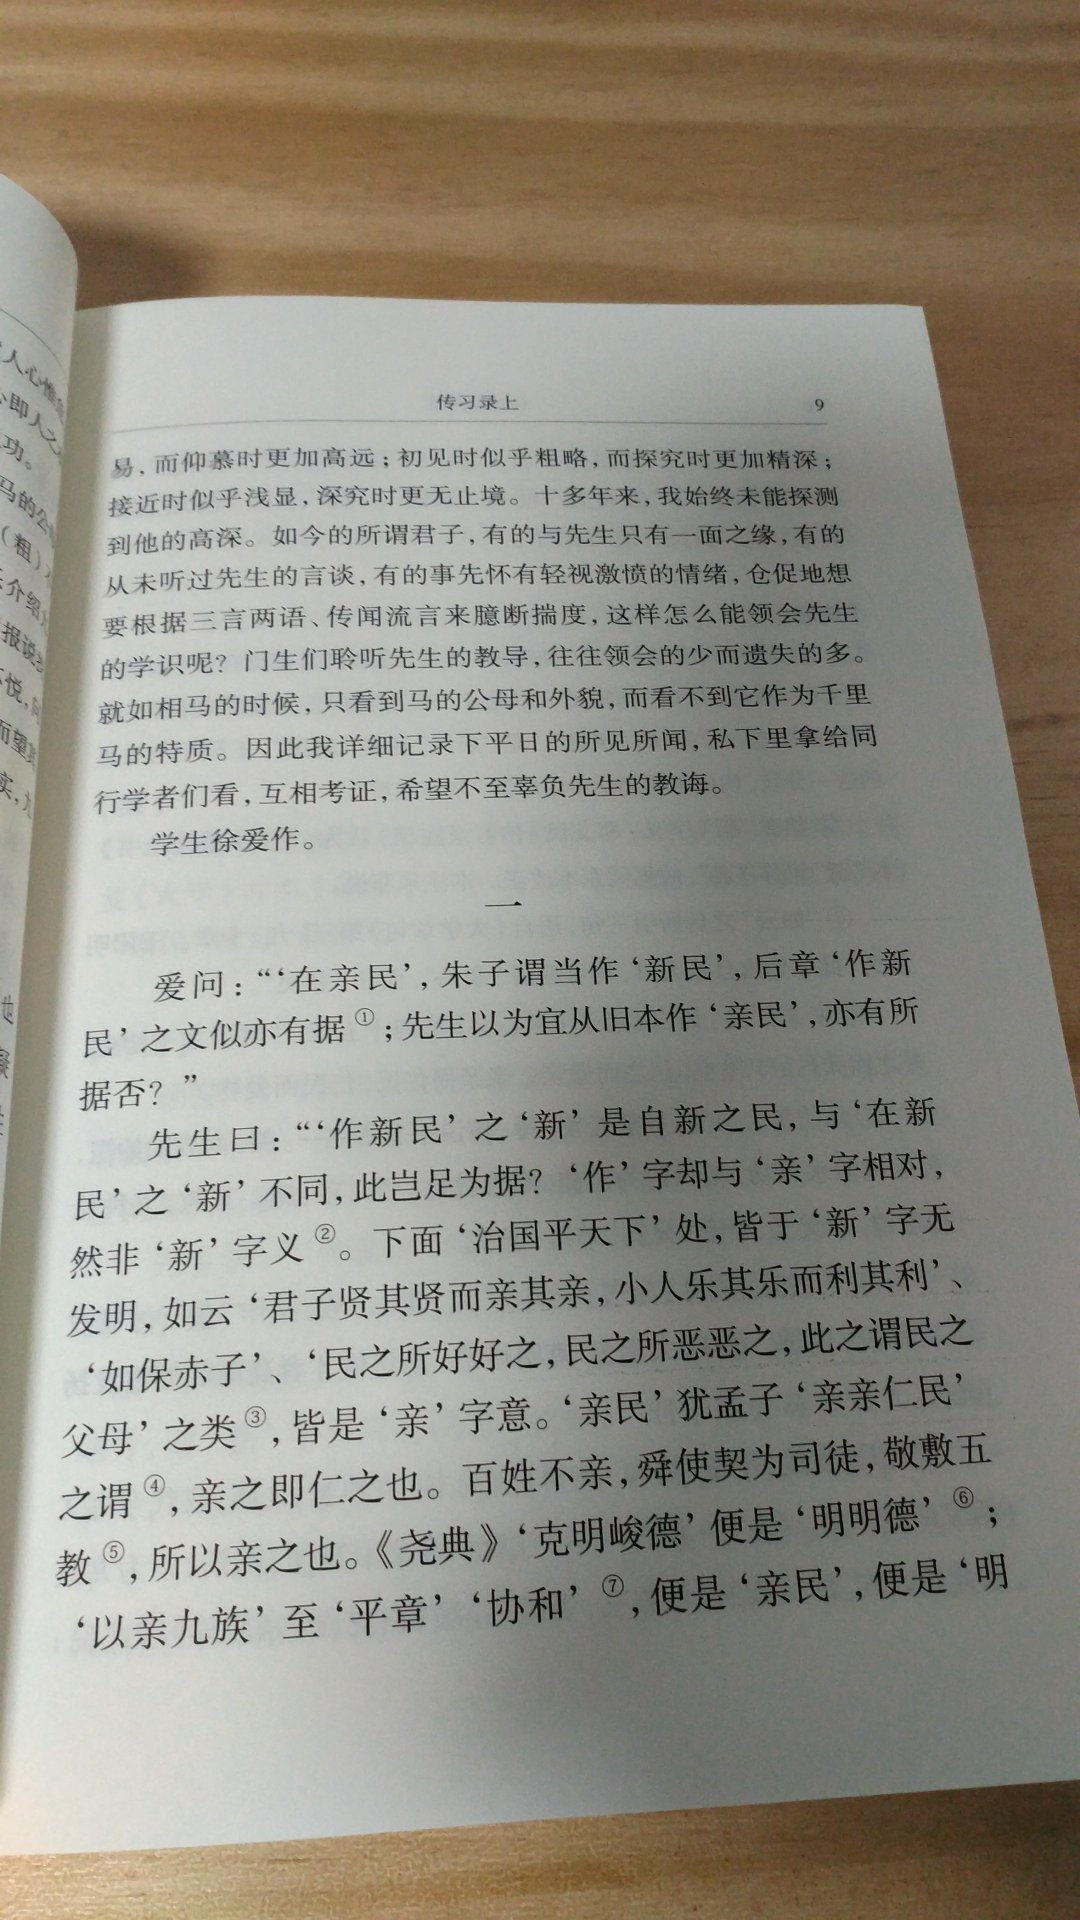 喜欢中华版出的古典名著，不仅内容充实，而且语言精炼地道。